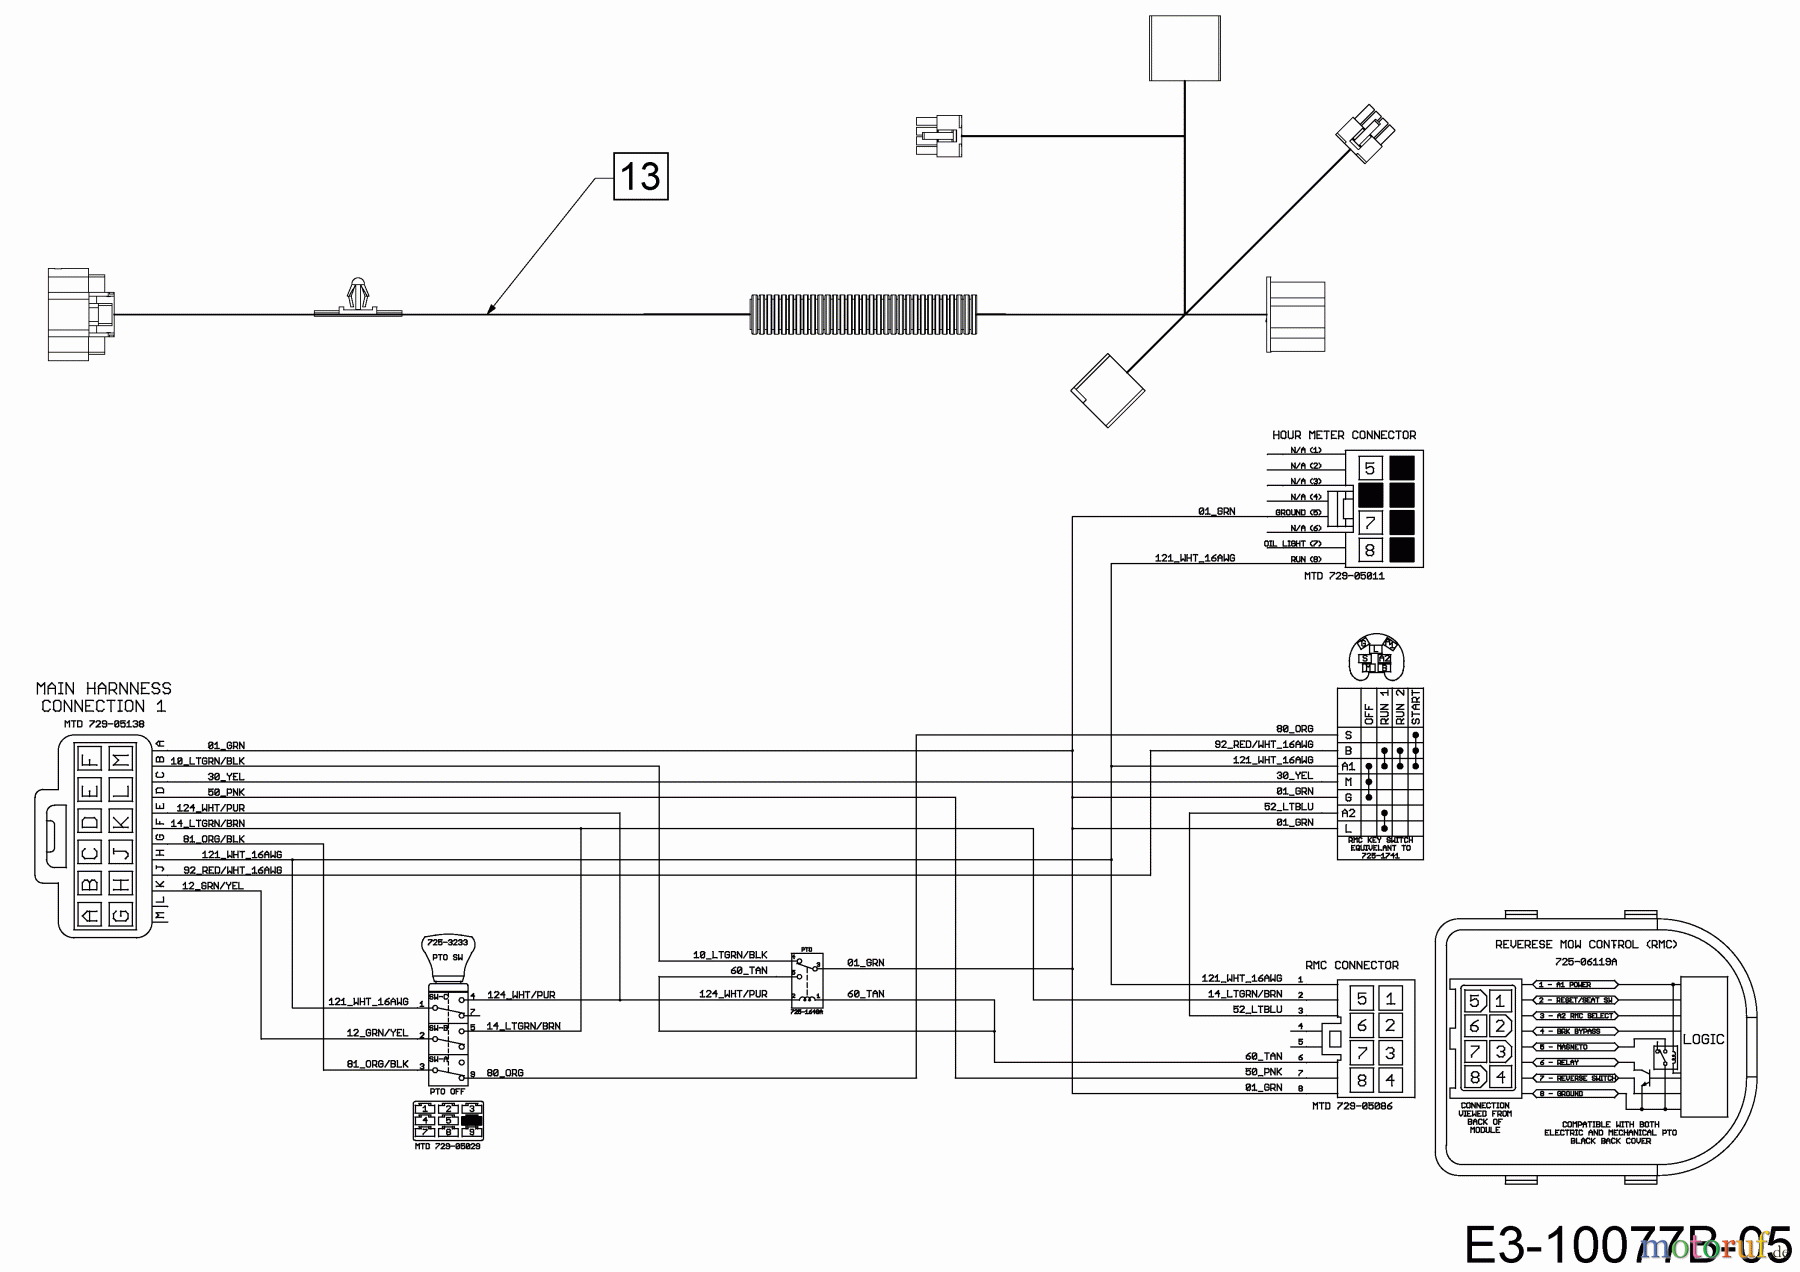  WOLF-Garten Expert Lawn tractors 106.230 H 13AQA1VR350  (2018) Wiring diagram dashboard